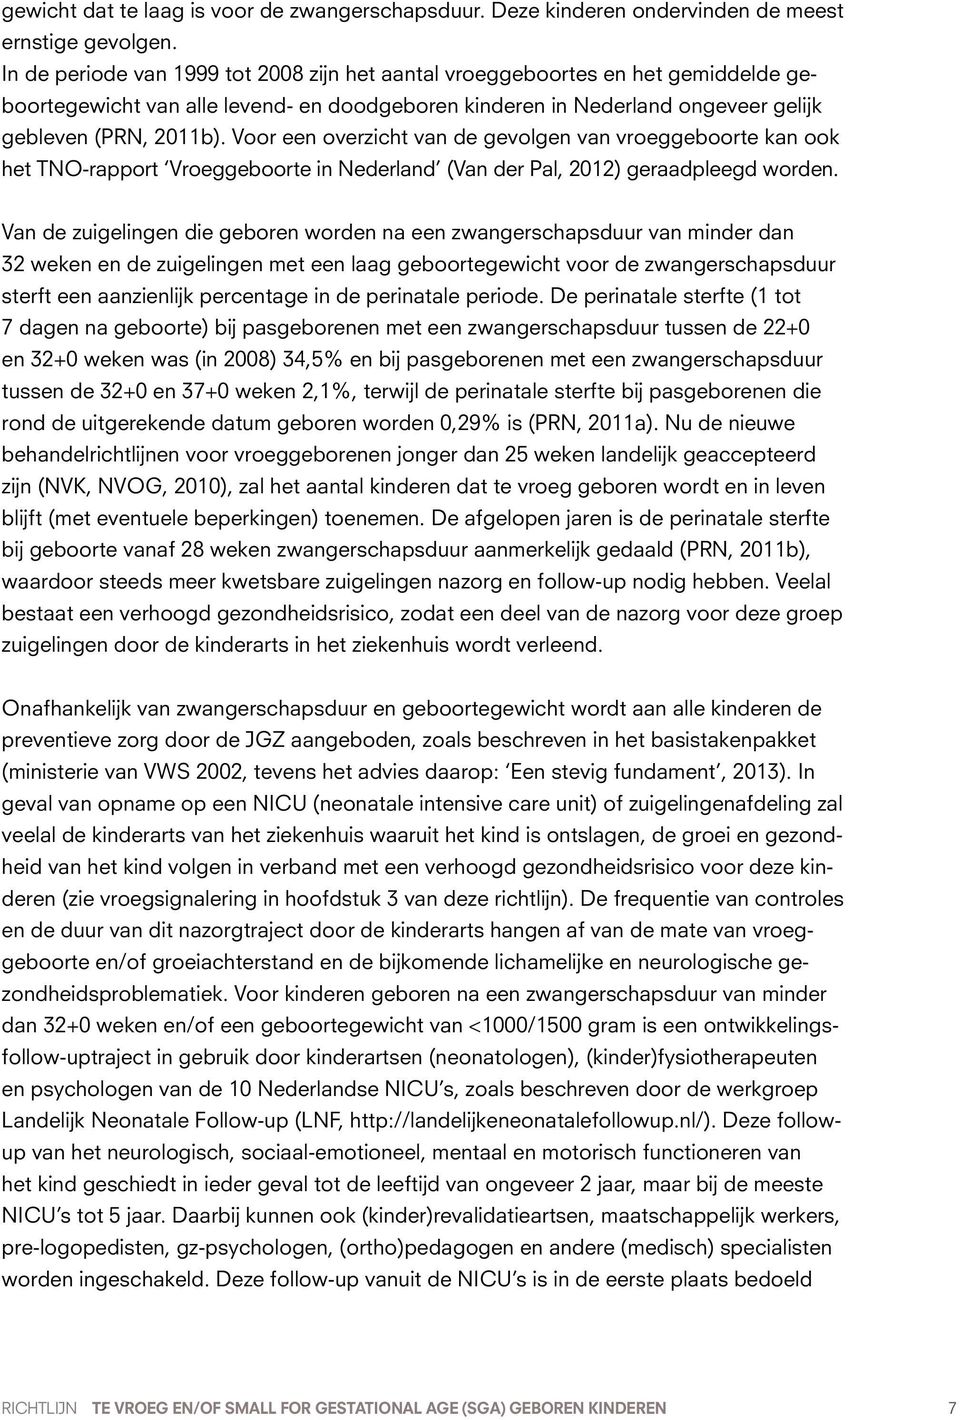 Voor een overzicht van de gevolgen van vroeggeboorte kan ook het TNO-rapport Vroeggeboorte in Nederland (Van der Pal, 2012) geraadpleegd worden.